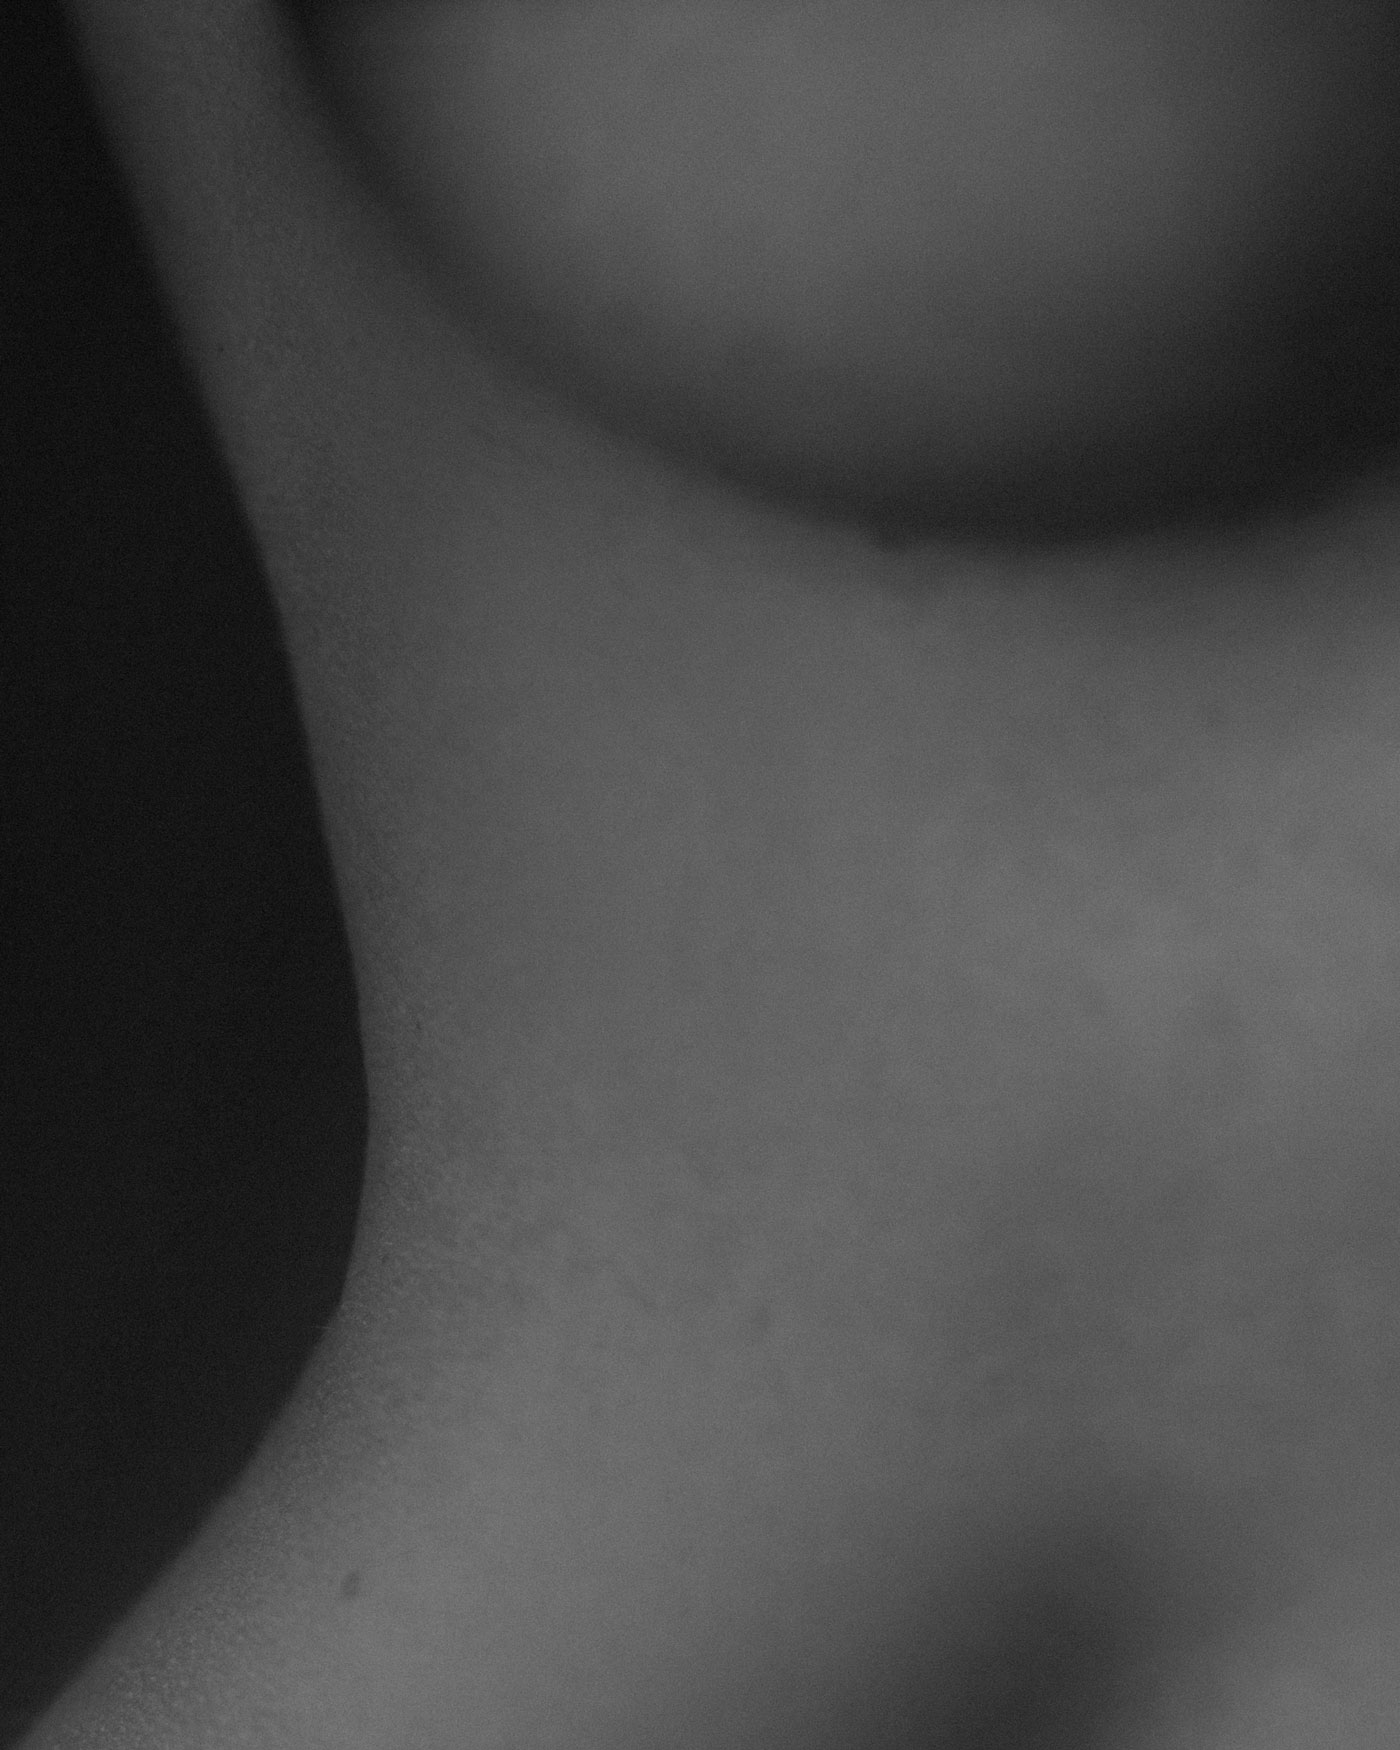 Schwarz-weiß Foto einer nackten Brust und einer schönen Taille einer schönen, jungen Frau - auf der Seite "Leistungsspektrum" von www.hanseatic-facelift.de unter der Rubrik "Brustasymmetrie" -"Formfehler, Asymmetrien oder Veränderungen der Brustwand, die ein unschönes Erscheinungsbild der Brüste verursachen, kommen häufig vor. Ich bin Experte für die Behandlung dieser komplexen Probleme und erziele gute und stabile Ergebnisse. Eine Operation zur Korrektur der Brustasymmetrie ist eine chirurgische Intervention, die die Größe und Form Ihrer Brüste ausgleicht, die Proportionen harmonisiert und Ihre Figur ausbalanciert. Darüber hinaus erhöht sie die positiven Gefühle Ihnen selbst gegenüber und erhöht Ihr Vertrauen und Ihre Sicherheit in das eigene Körperbild".